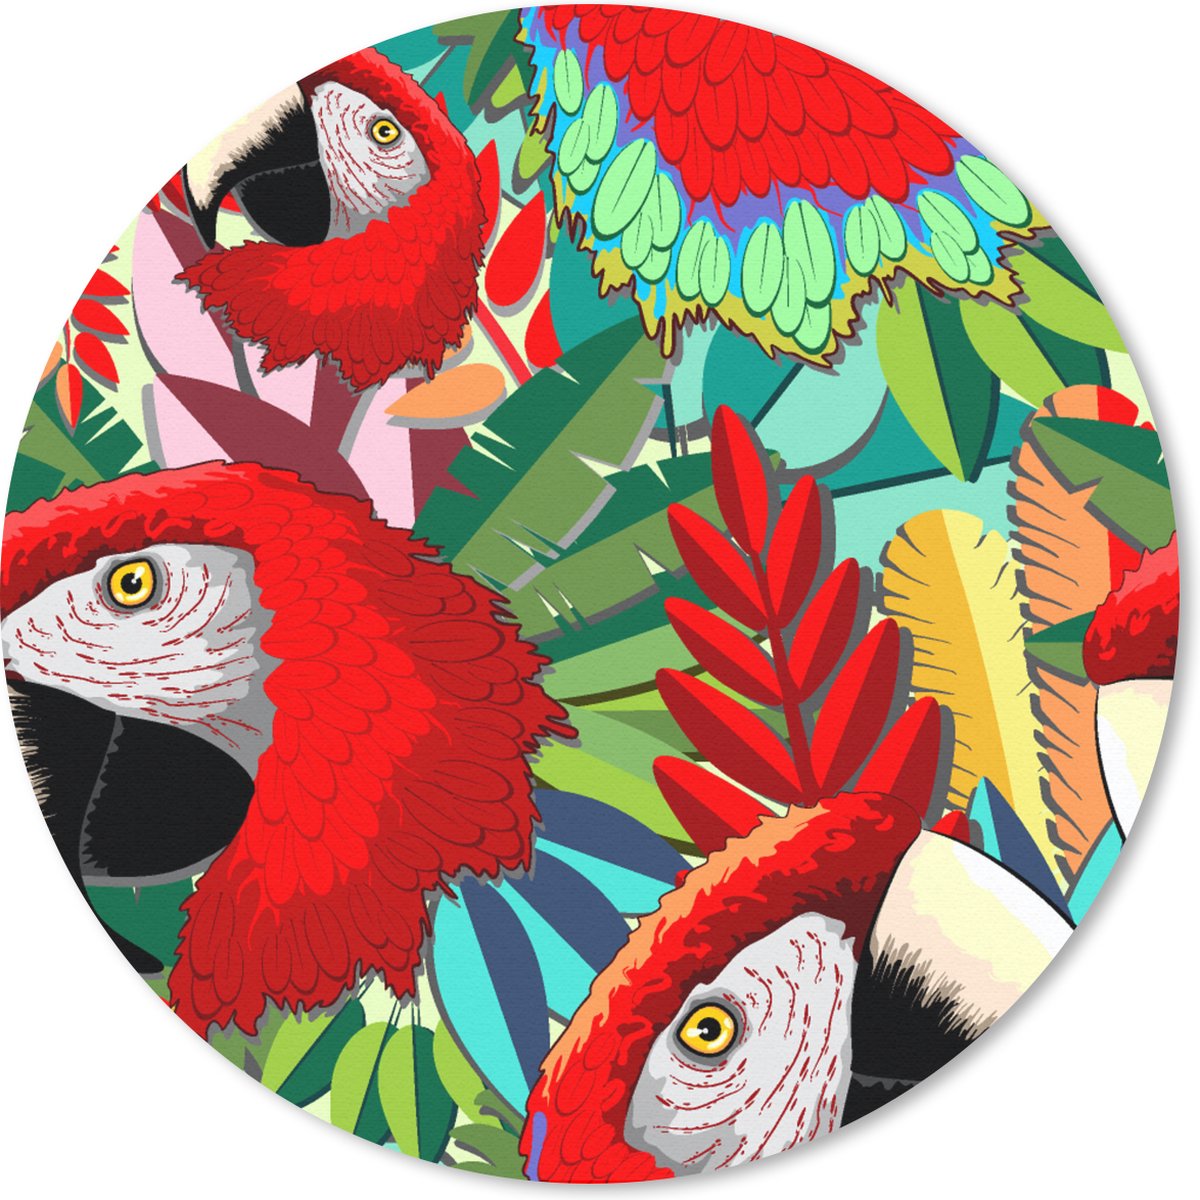 Muismat - Mousepad - Rond - Jungle - Papegaai - Vogels - Design - 30x30 cm - Ronde muismat